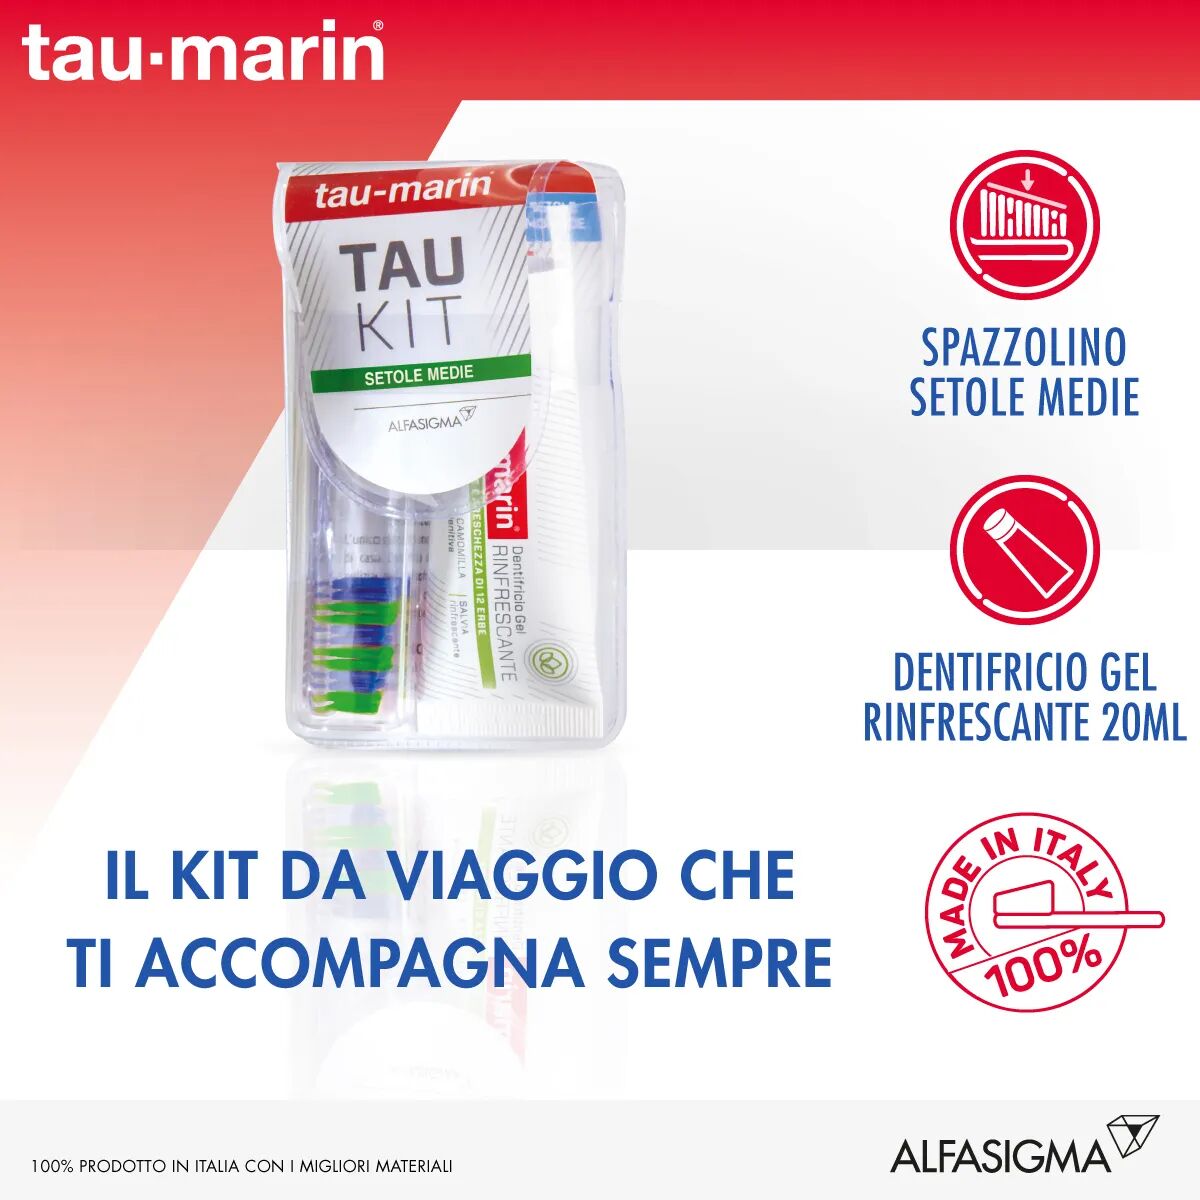 tau-marin kit da viaggio spazzolino medio componibile + dentifricio 20 ml